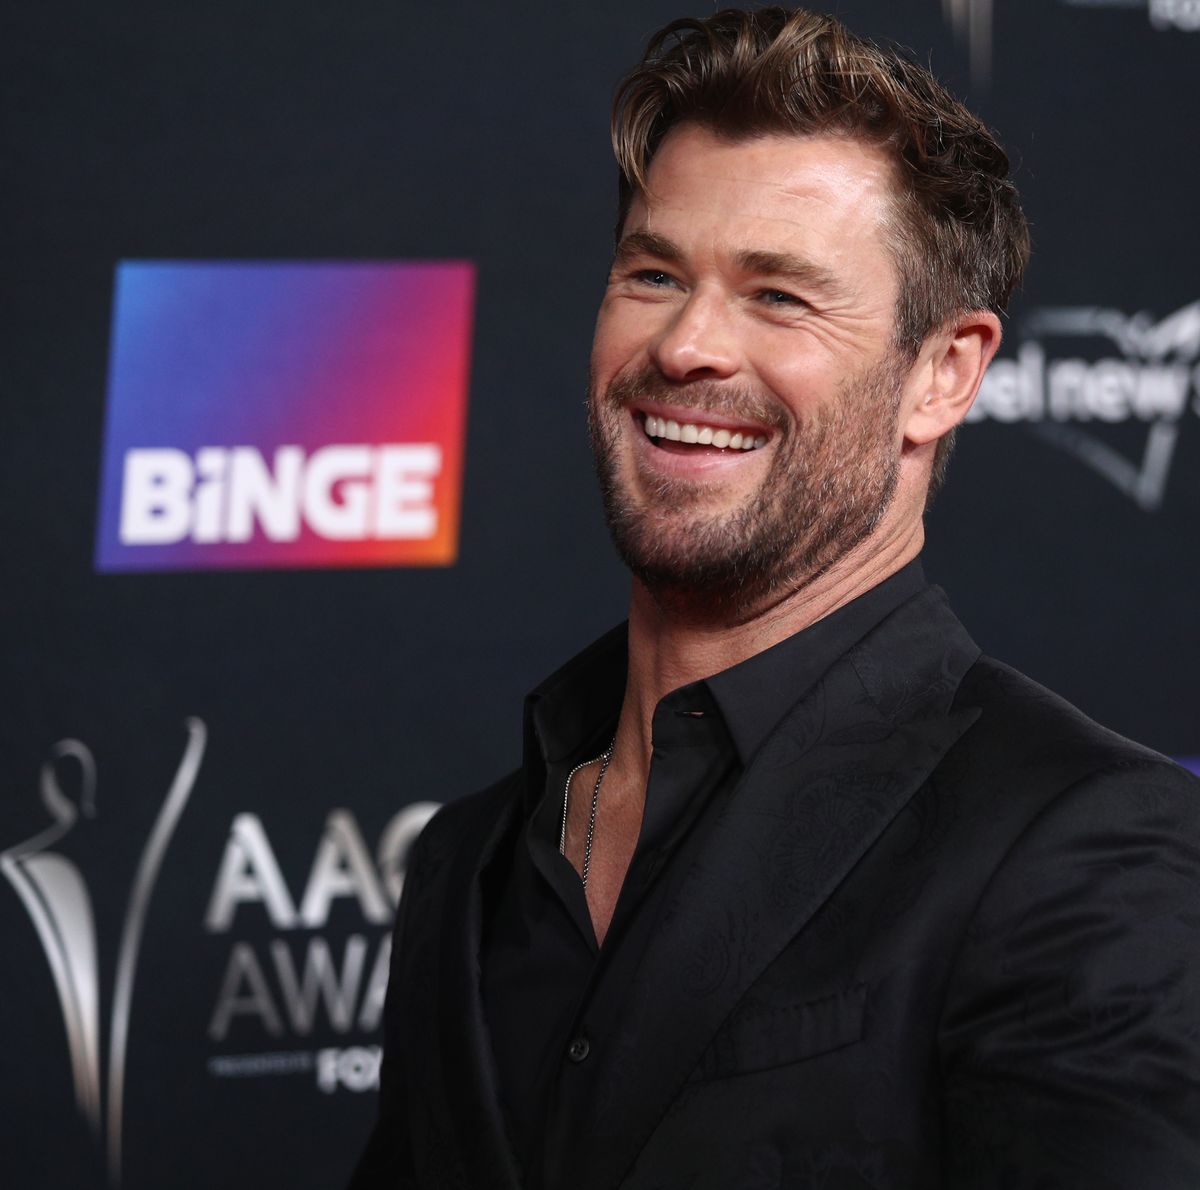 Chris Hemsworth continuará sendo o Thor? Ator abre o jogo